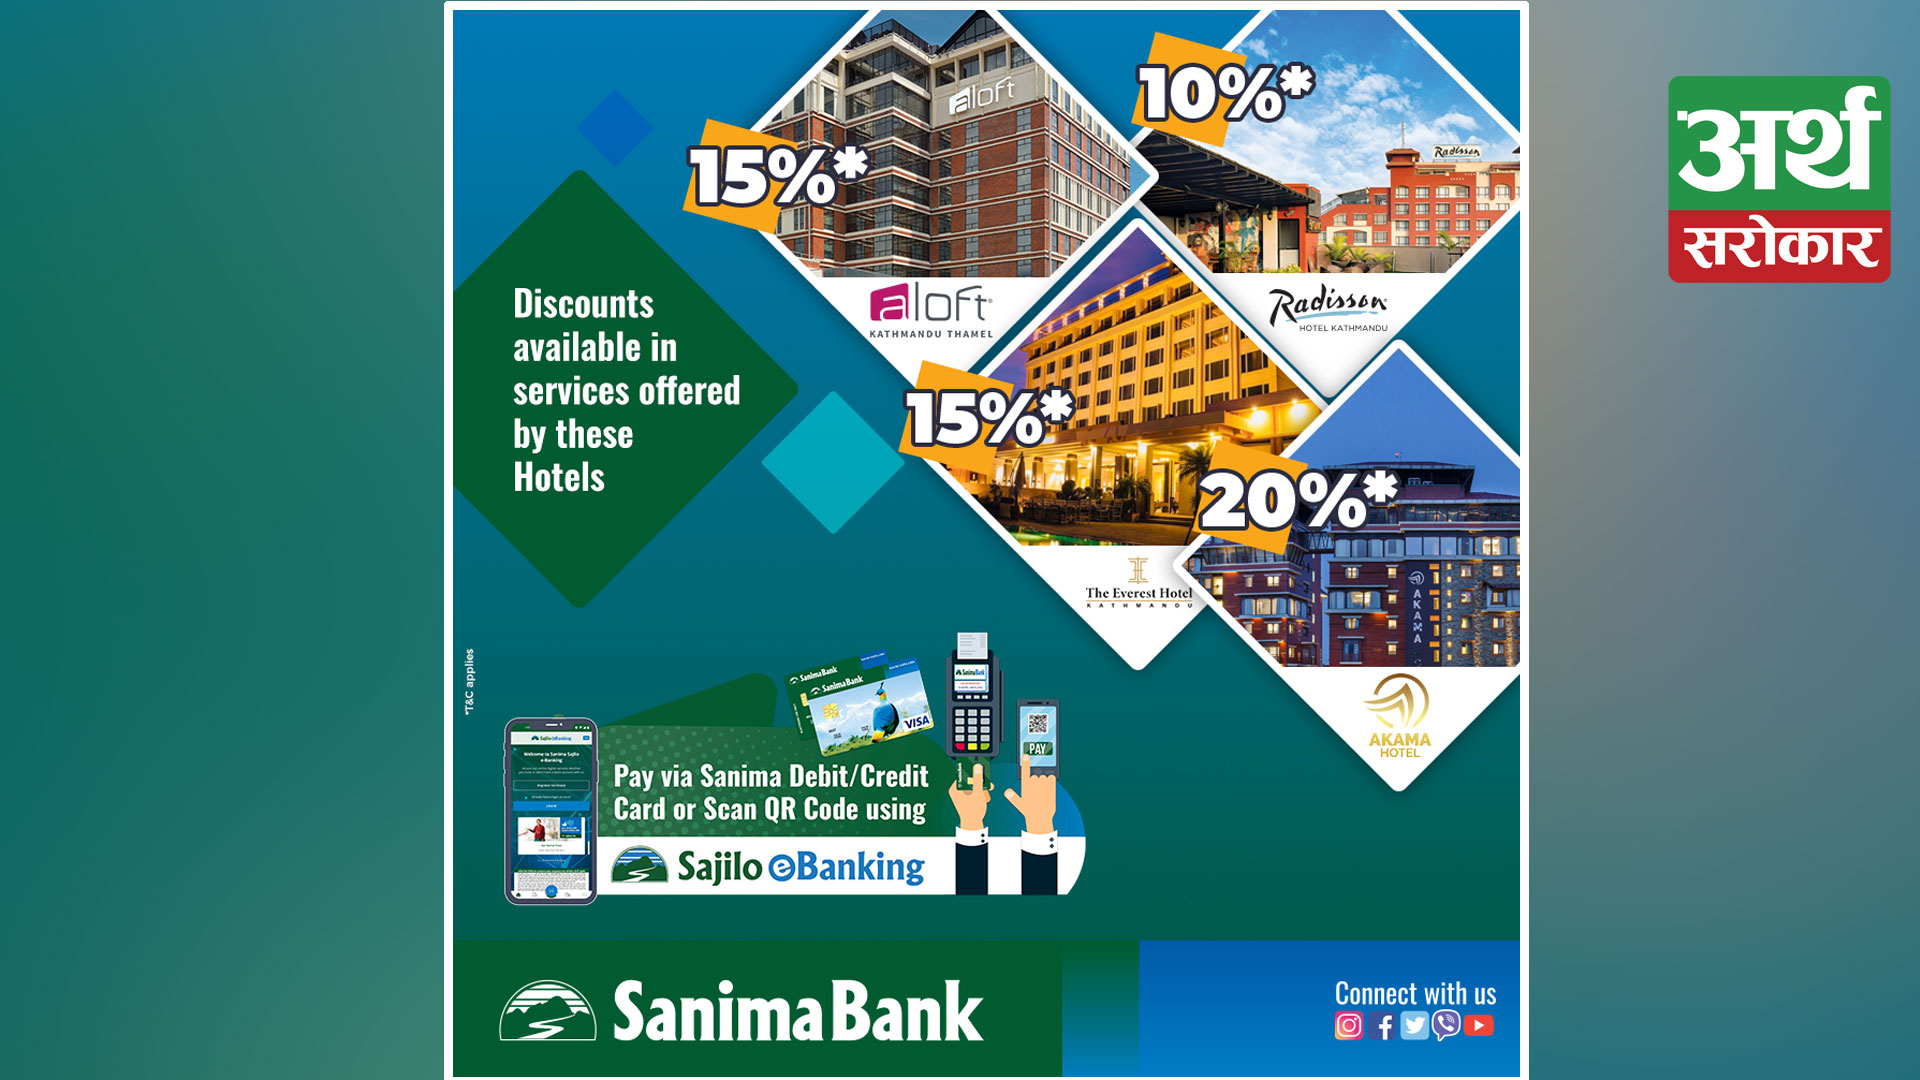 Sanima Bank signed an agreement with Radisson Hotel, The Everest Hotel, Hotel Akama and Aloft Kathmandu Thamel